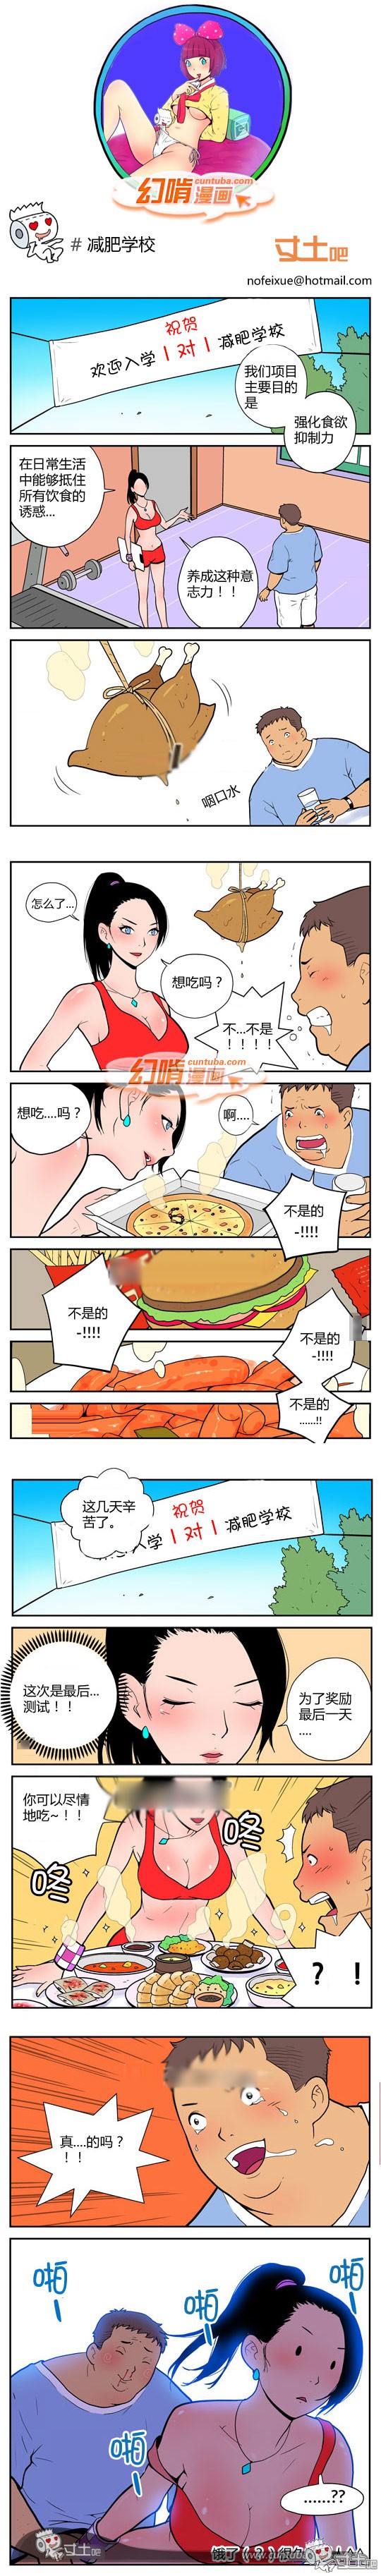 幻啃漫画减肥学校